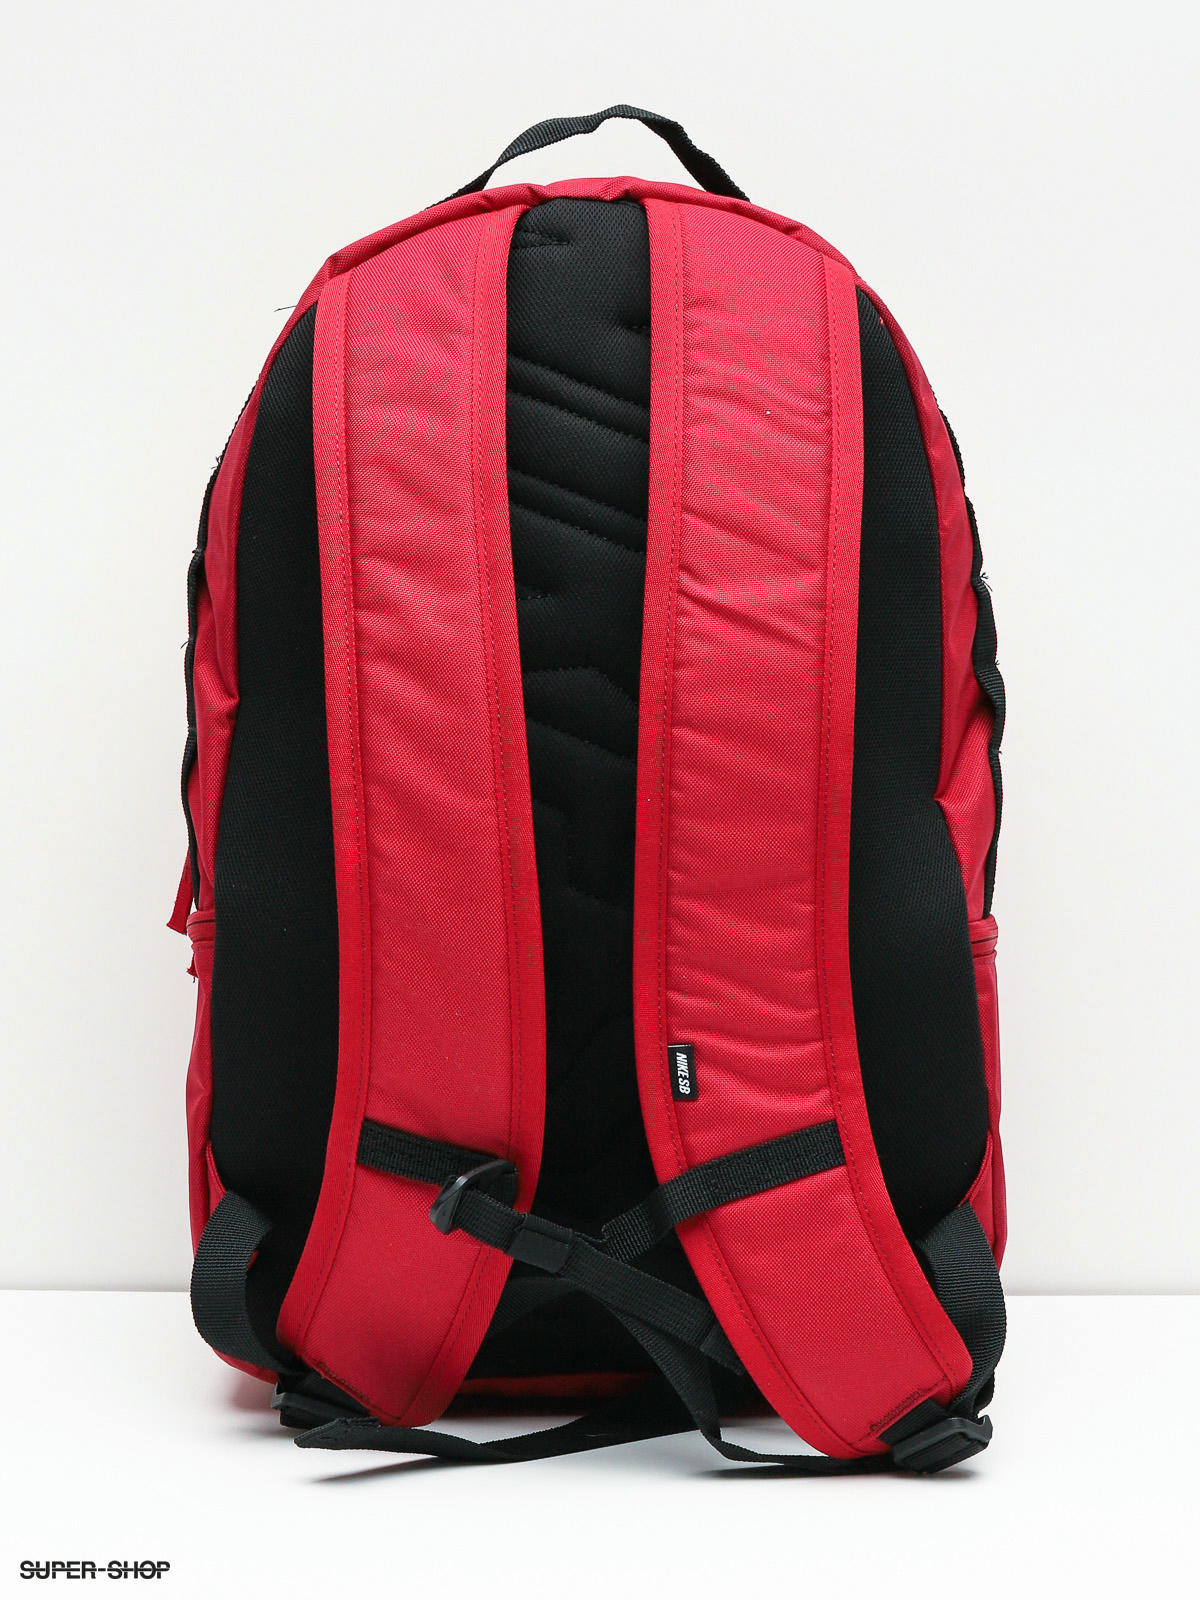 nike sb backpack red